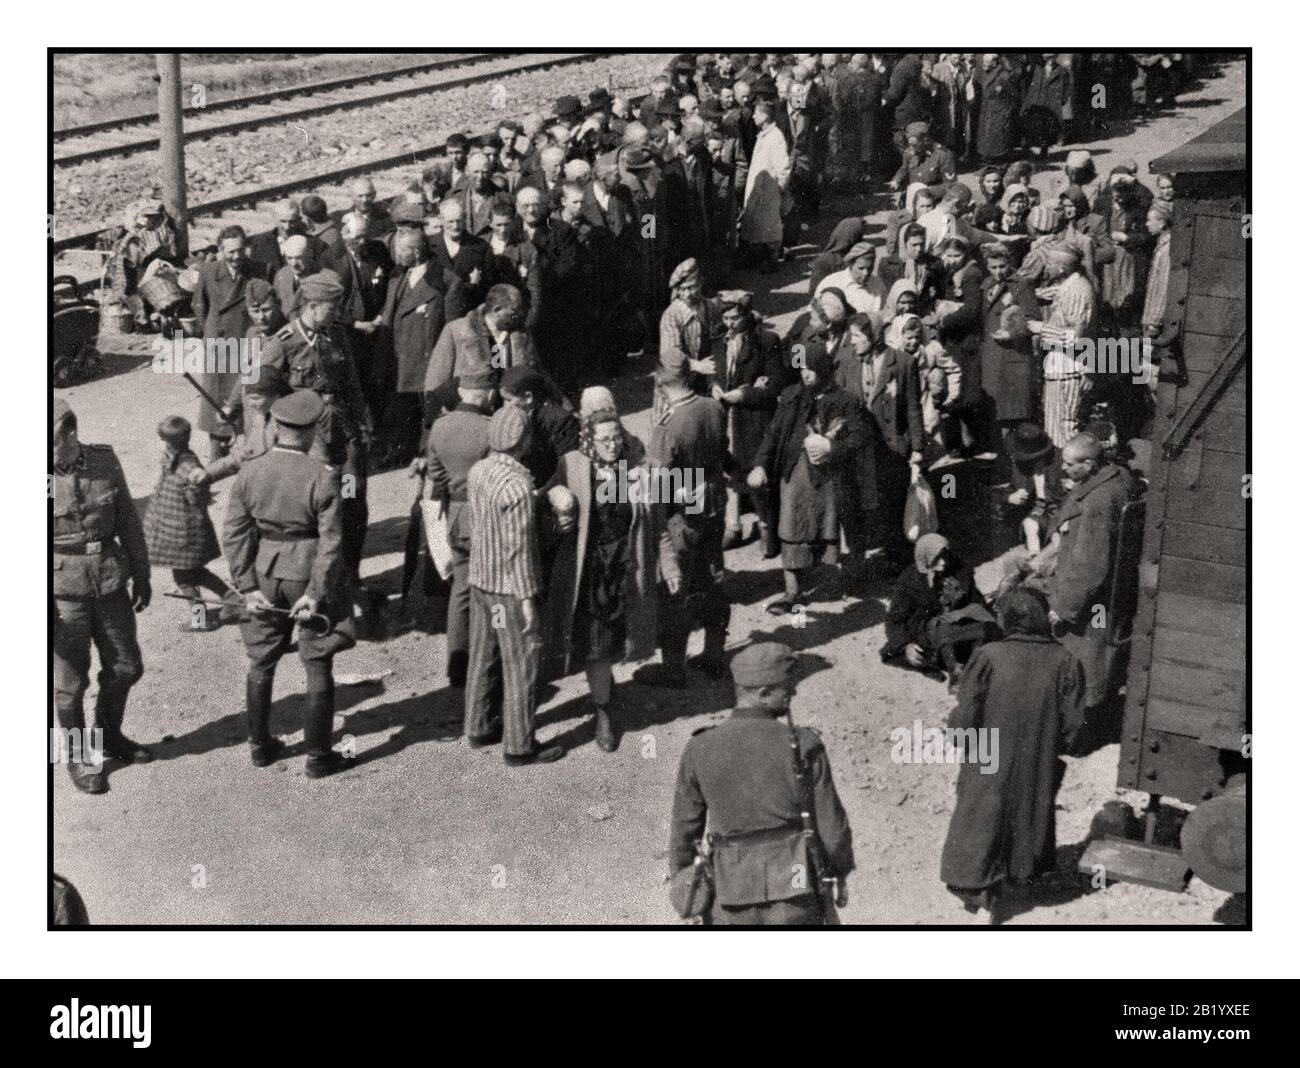 AUSCHWITZ-BIRKENAU DETENUTI CODA LINEA DI ARRIVO - una visione dell'inferno sulla terra. 1944, i Nazisti 'classificazione' (la vita o la morte) gli ignari prigionieri su rampa concourse fuori dall'ingresso di sterminio di Auschwitz-Birkenau morte camp. Il famigerato campo di Auschwitz fu iniziato da ordine di Adolf Hitler nel 1940 durante l'occupazione della Polonia dalla Germania Nazista durante la Seconda Guerra Mondiale 2, inoltre attivata da Heinrich Luitpold Himmler il Reichsführer delle Schutzstaffel e membro leader del partito nazista della Germania Foto Stock